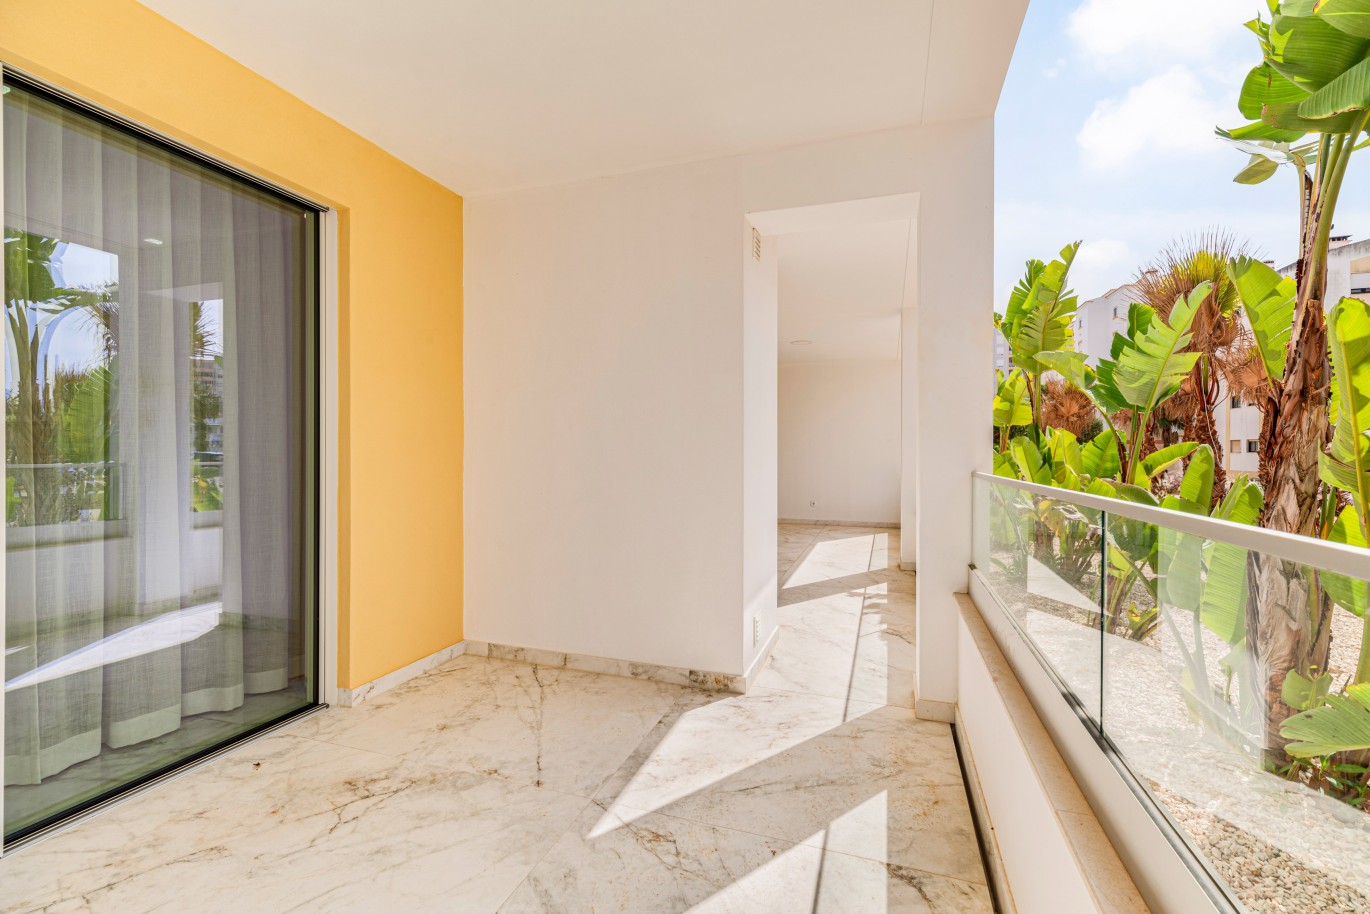 Apartamento, com terraço, para venda, em Lagos, Algarve_238234